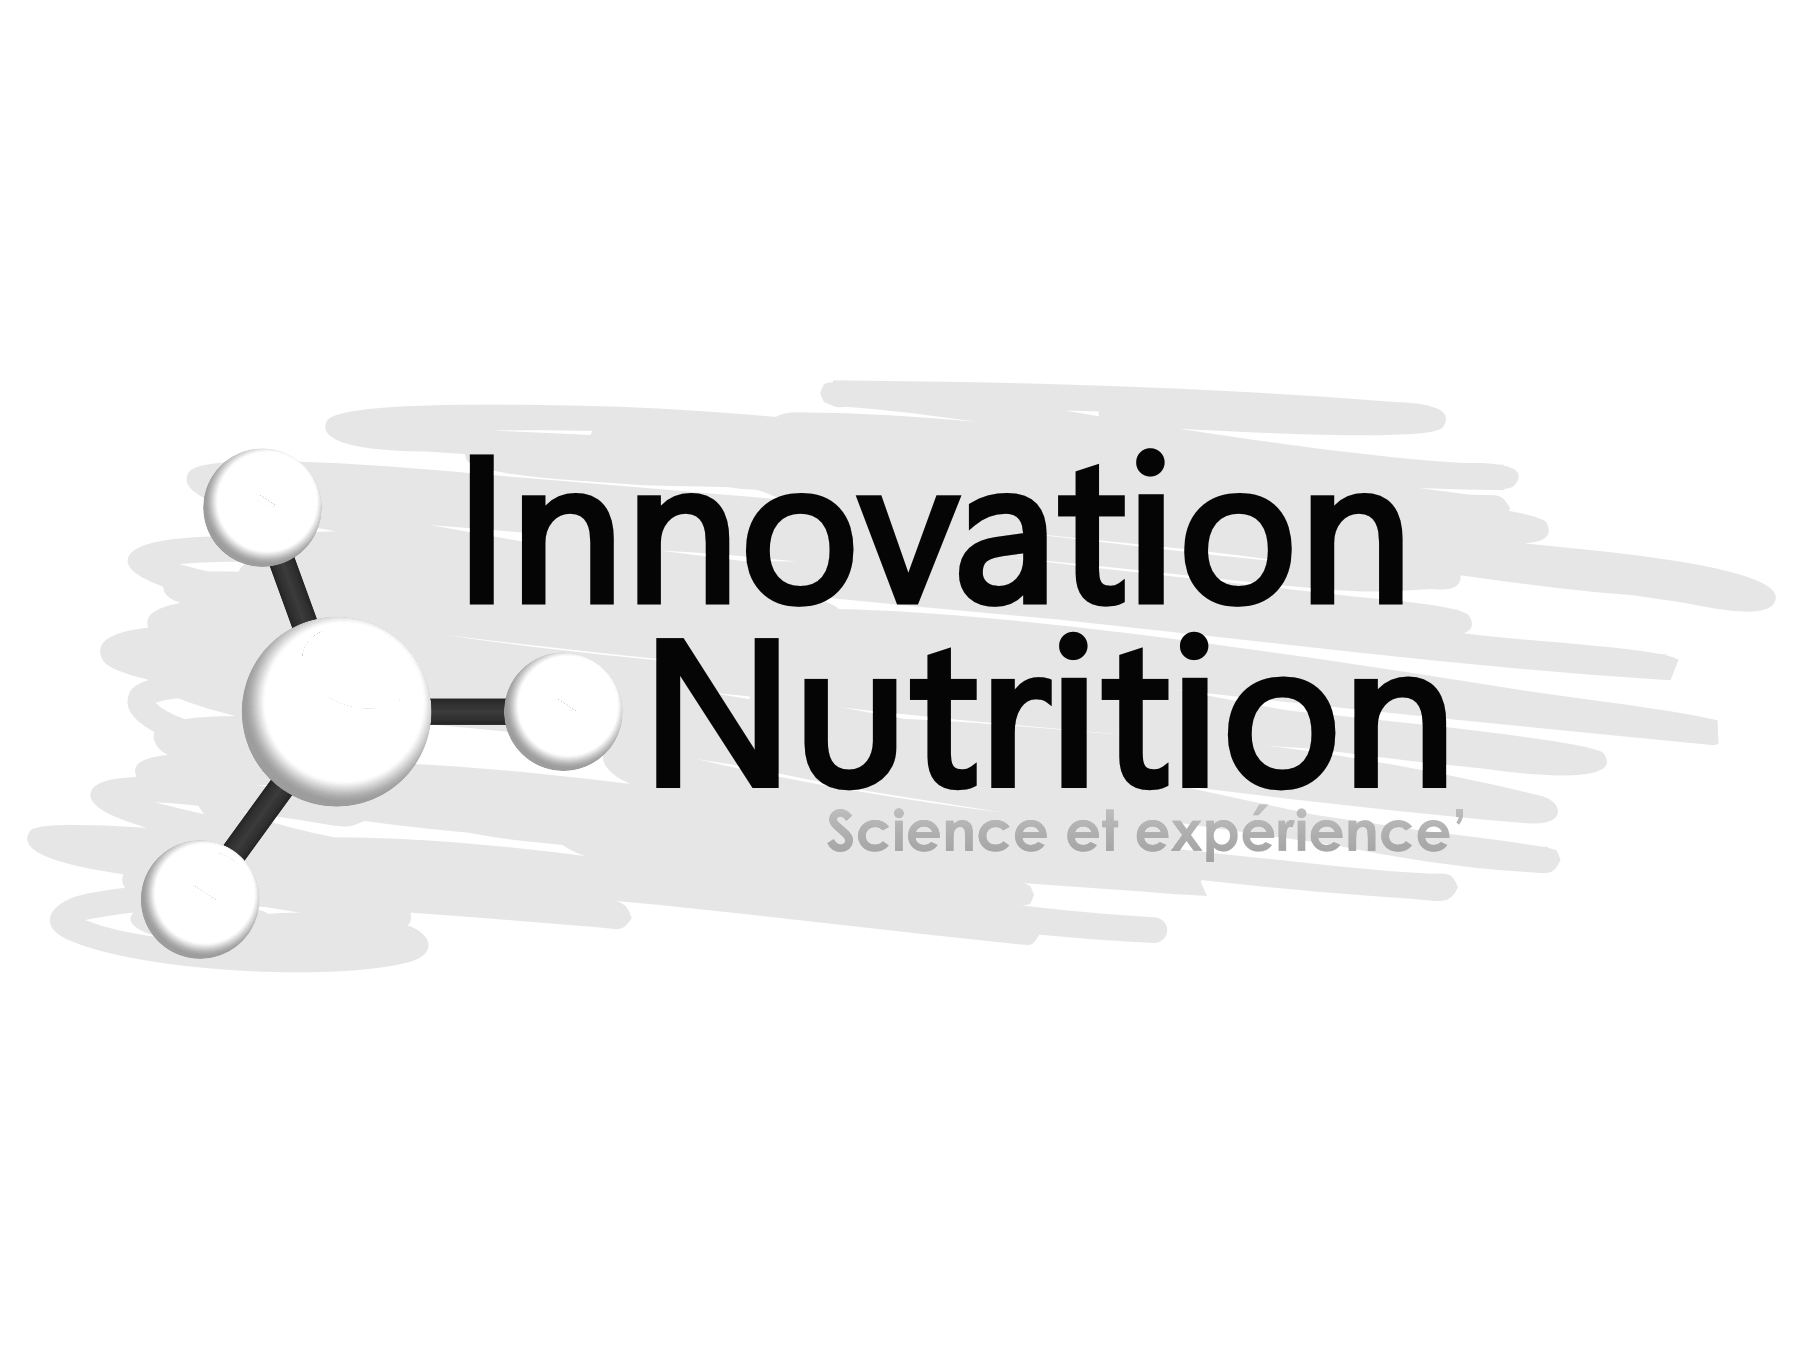 Innovation Nutrition, vous offrirons un service exceptionnel et notre clinique chiropraticien Actif sont partenaire depuis plusieurs années